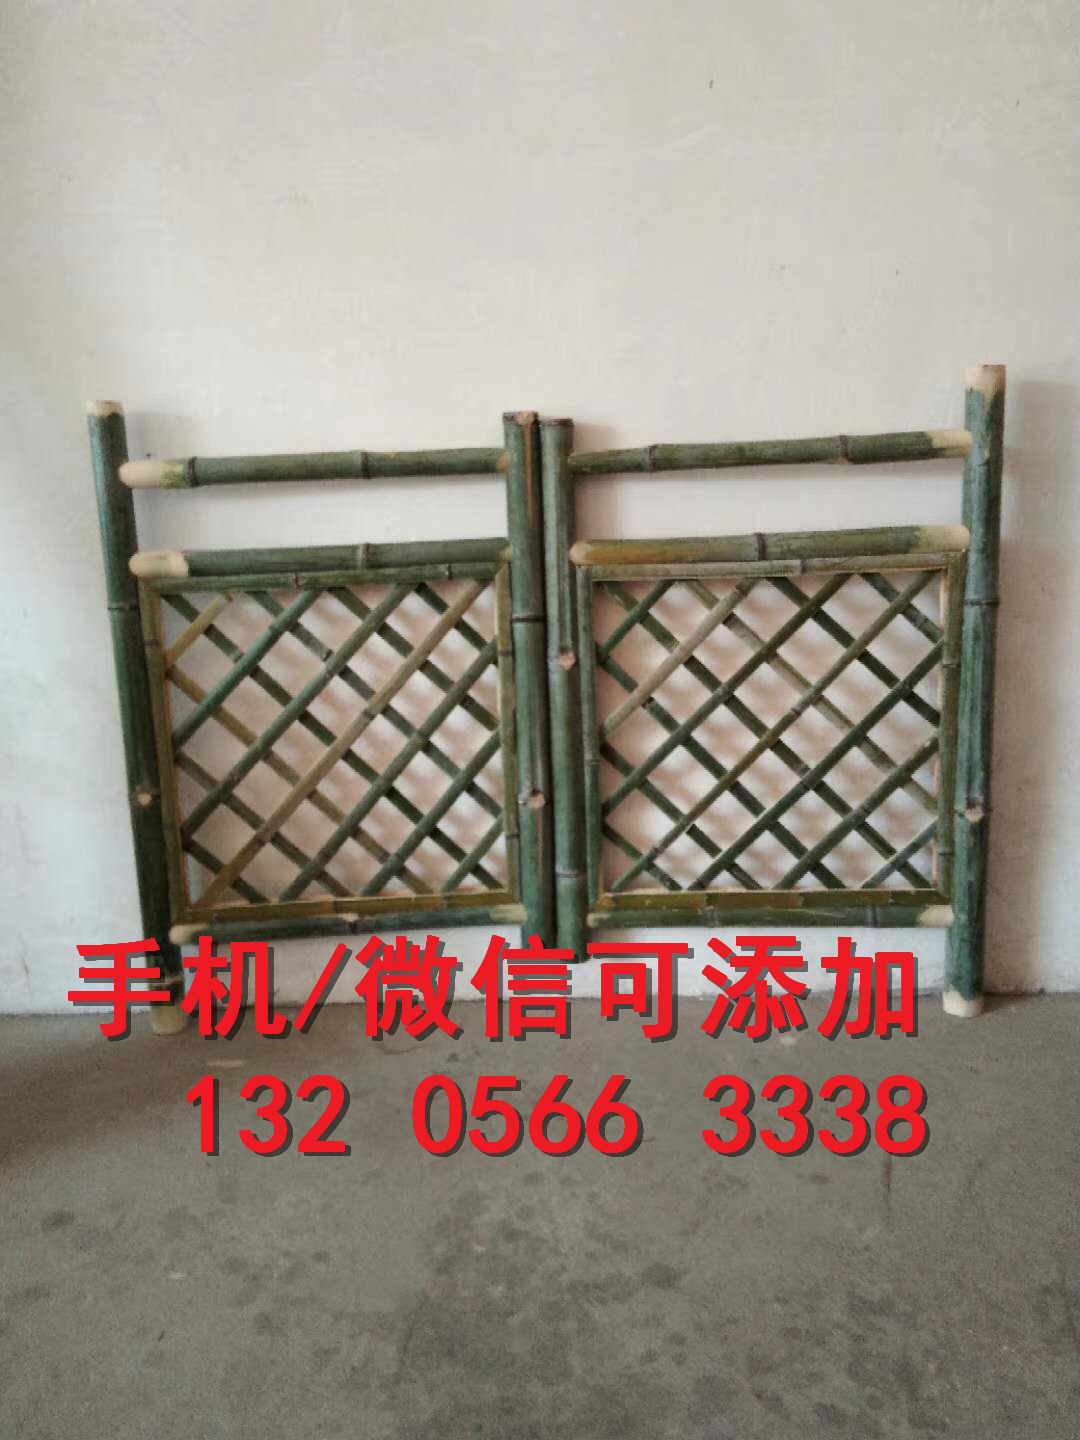 北京通州炭化木隔栅厂家